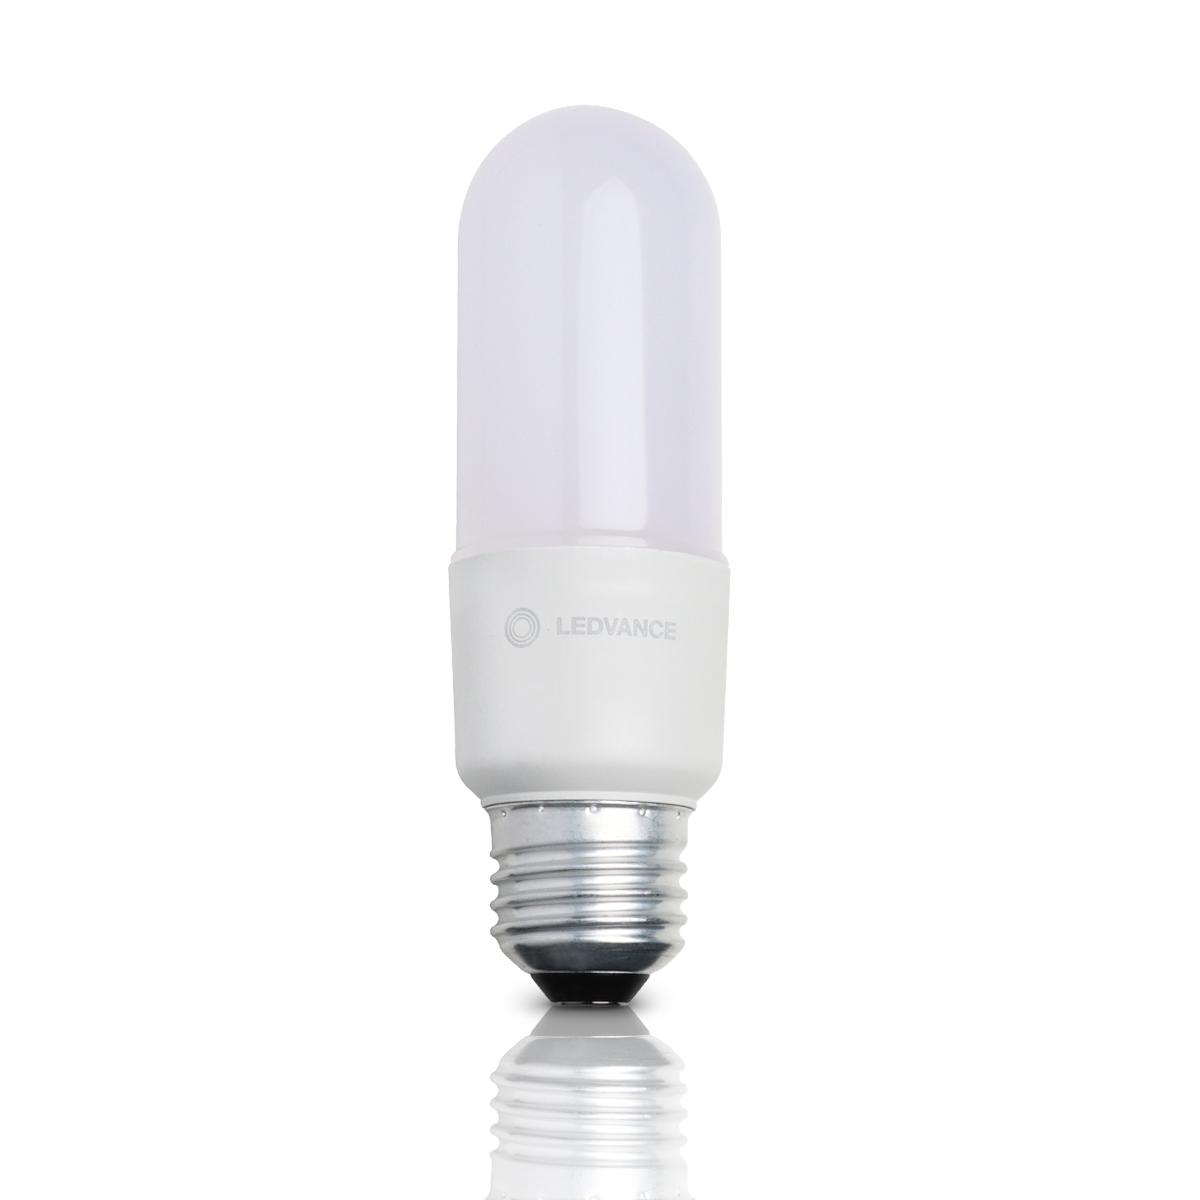 Ledvance LED Neutralweiß E27 8W 806lm - Classic Stick LED | Ersatz für 60W